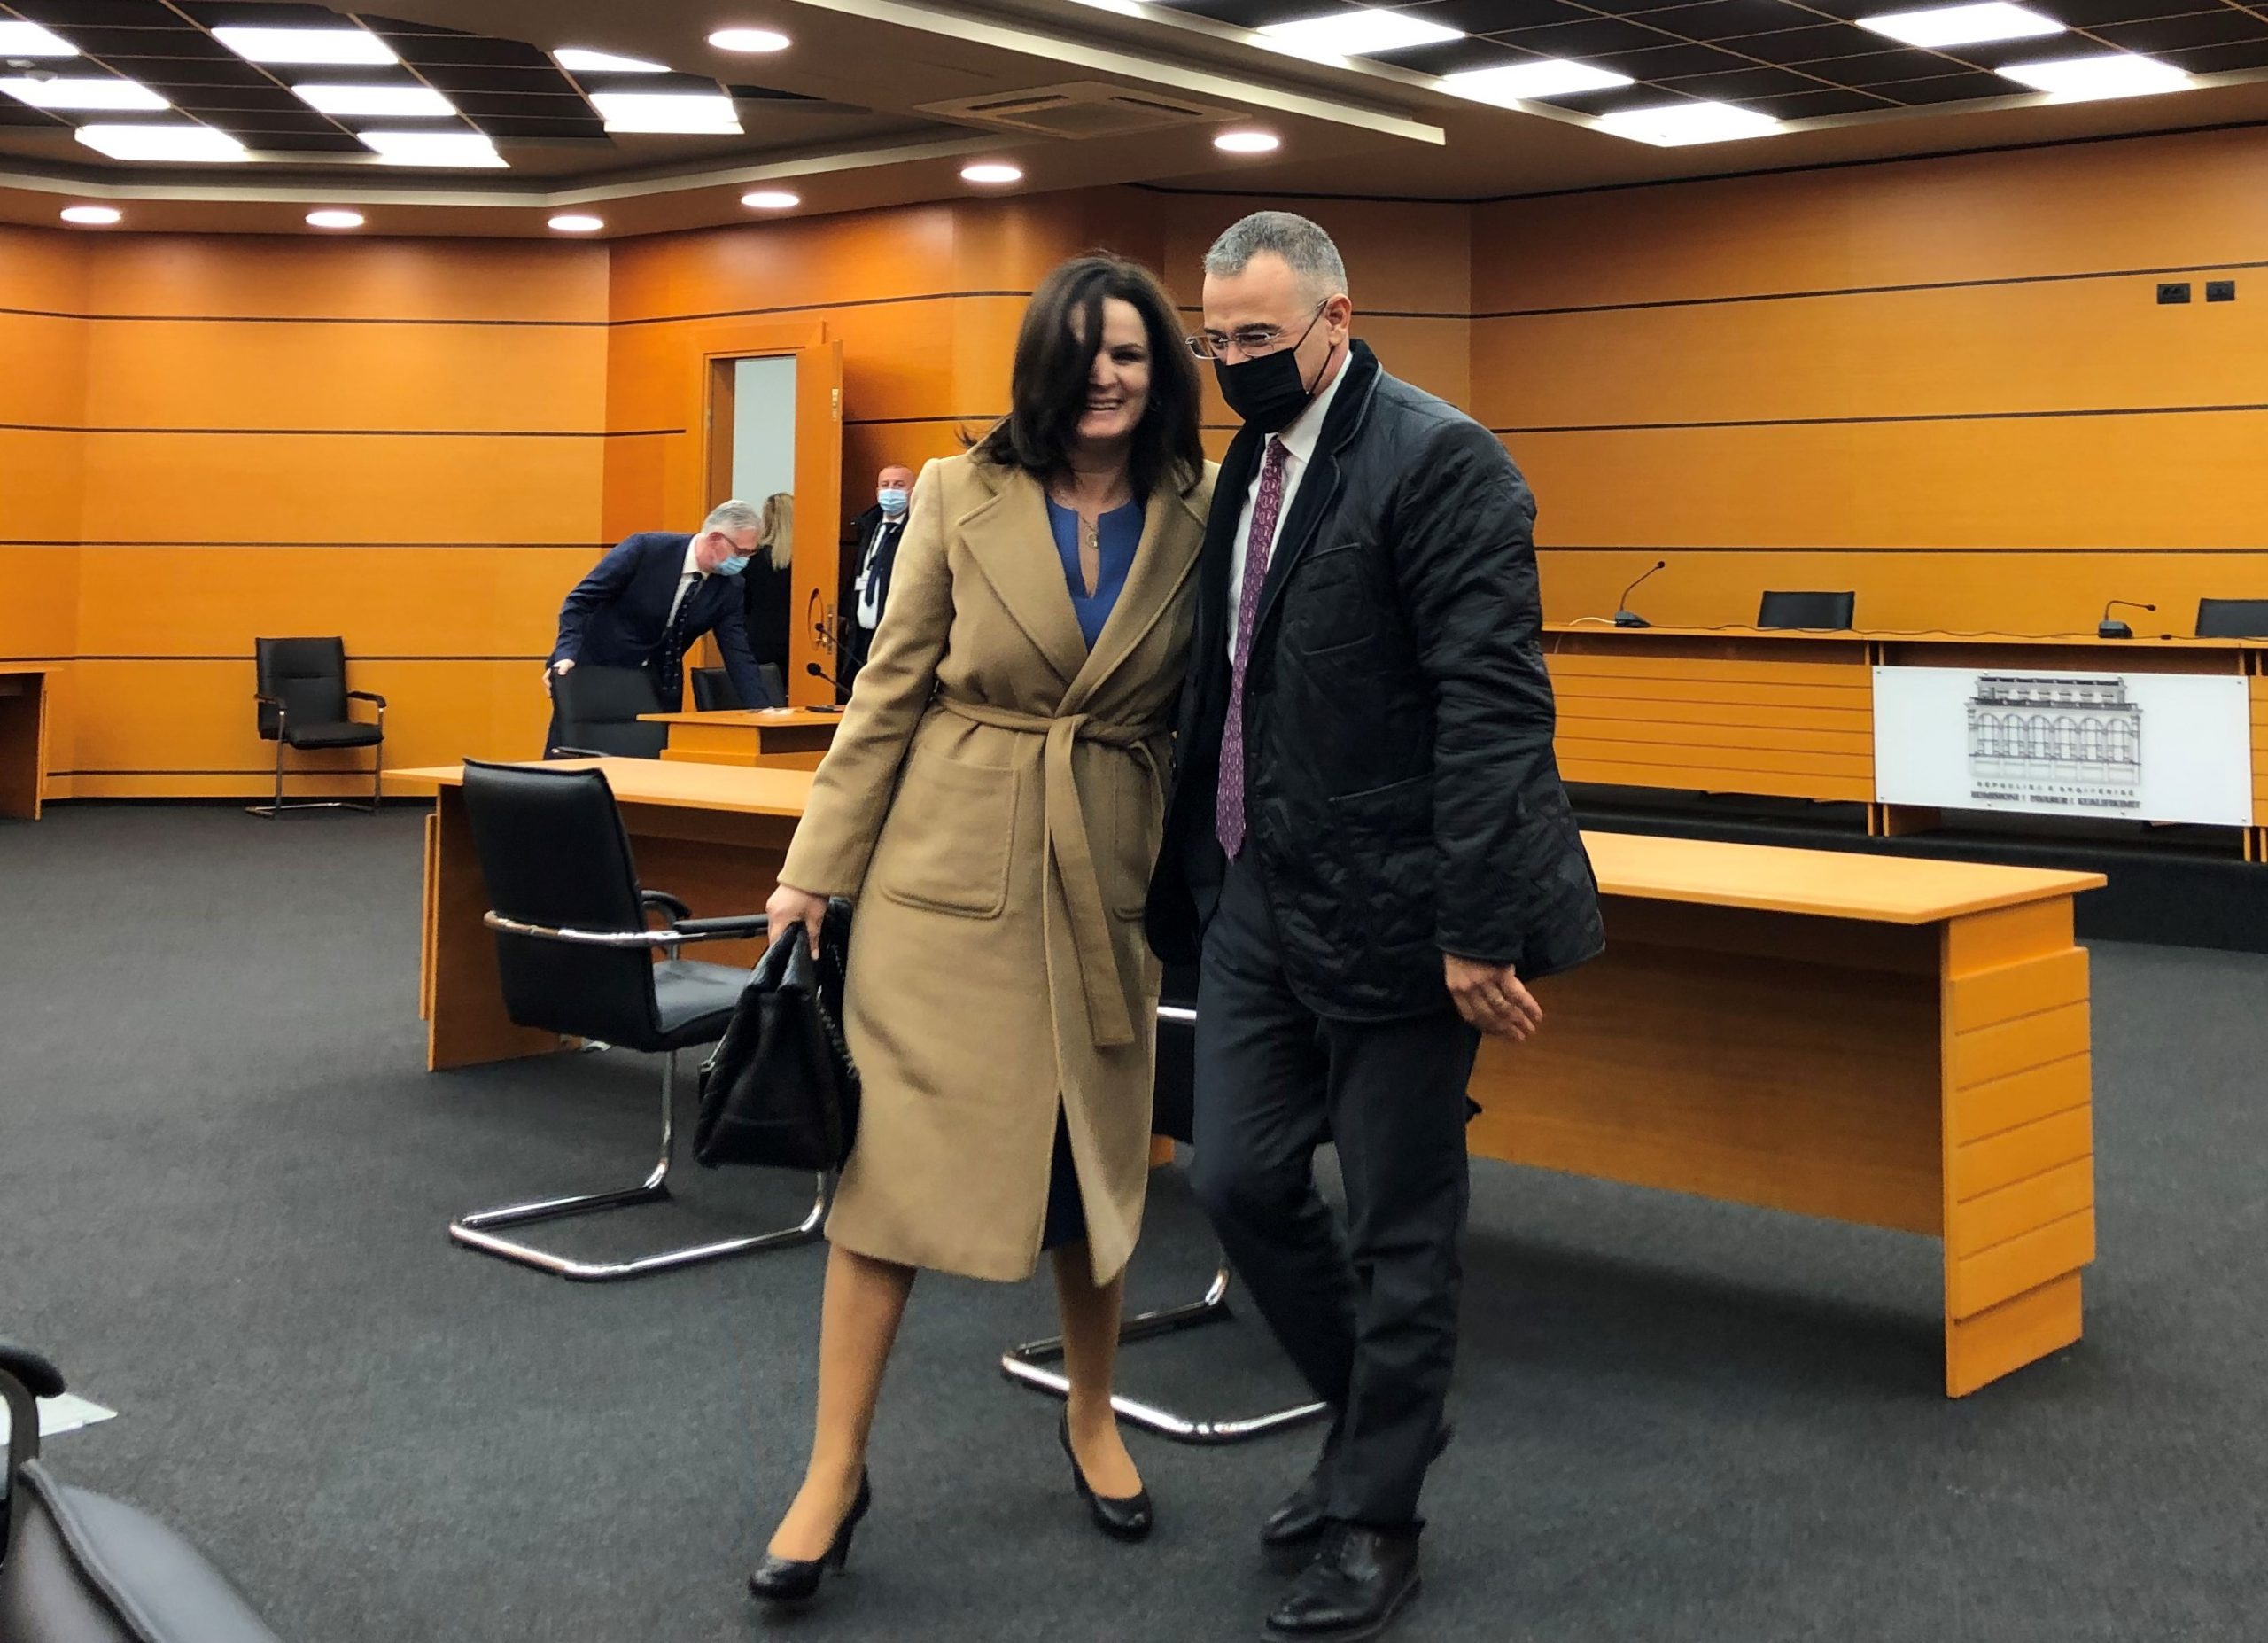 Prokurori Drini Pali dhe avokatja Antoneta Sevdari në KPK | Foto : Edmond Hoxhaj